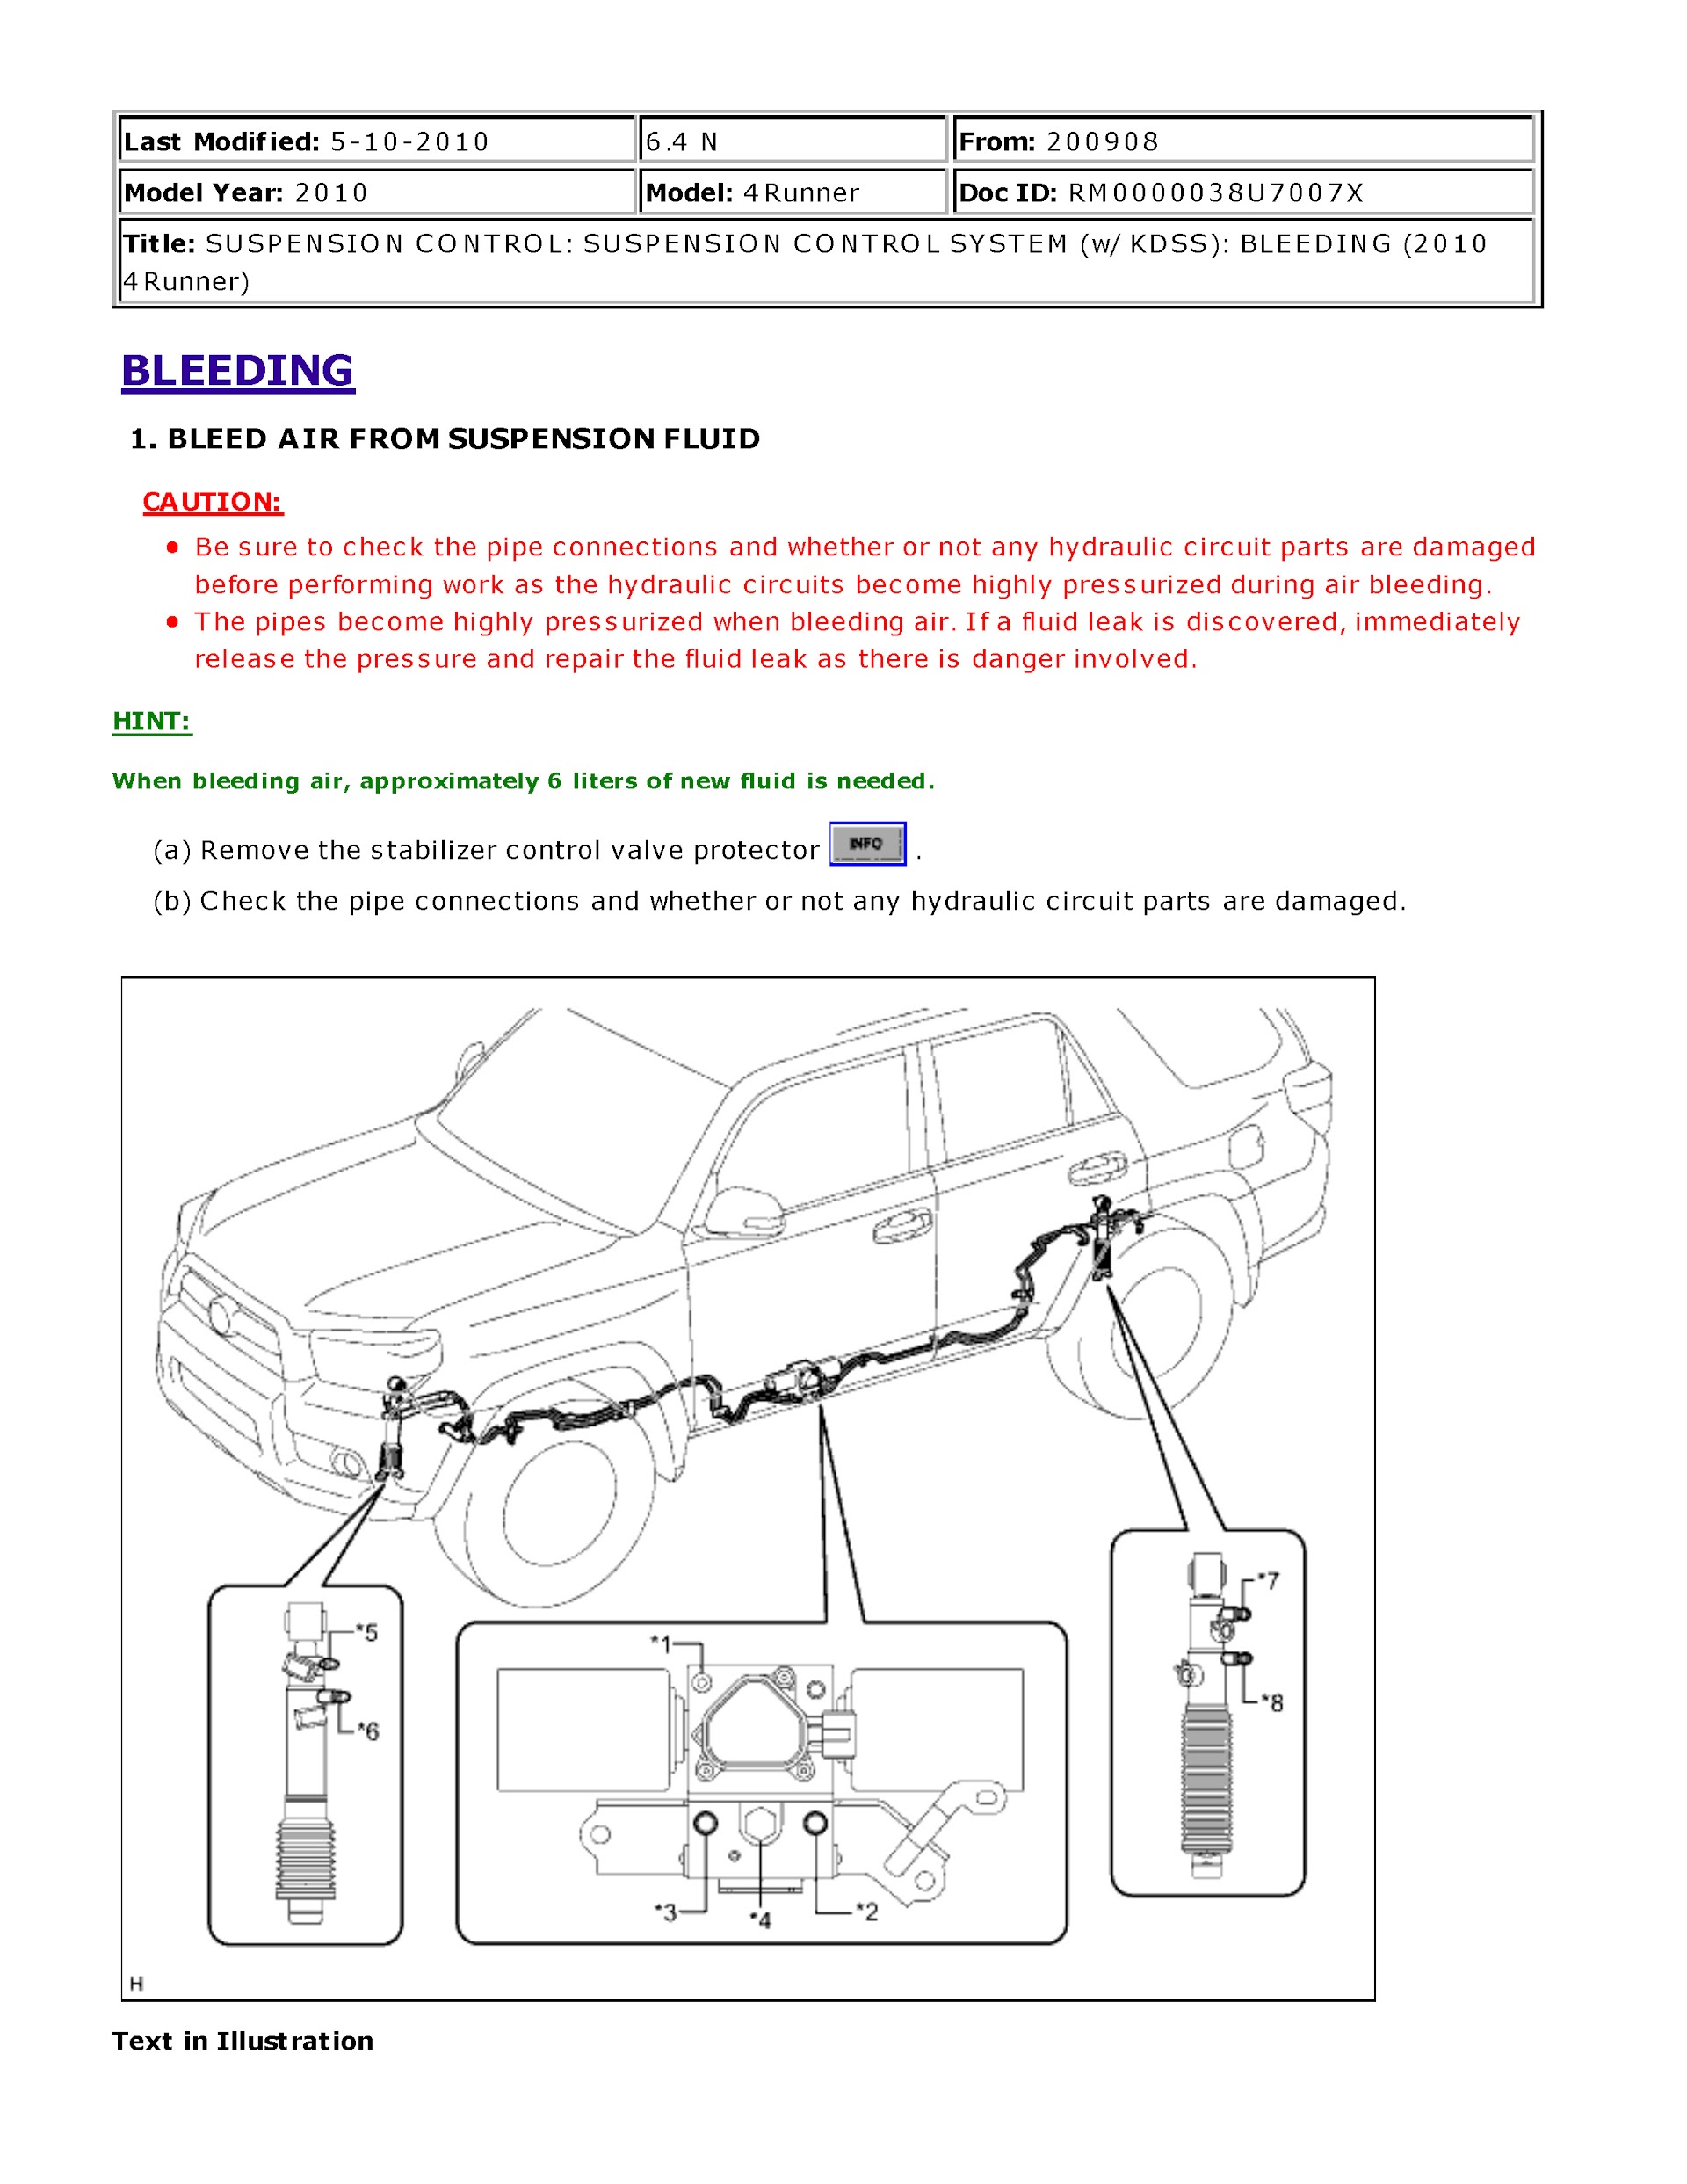 2010 Toyota 4Runner Repair Manual, suspension system